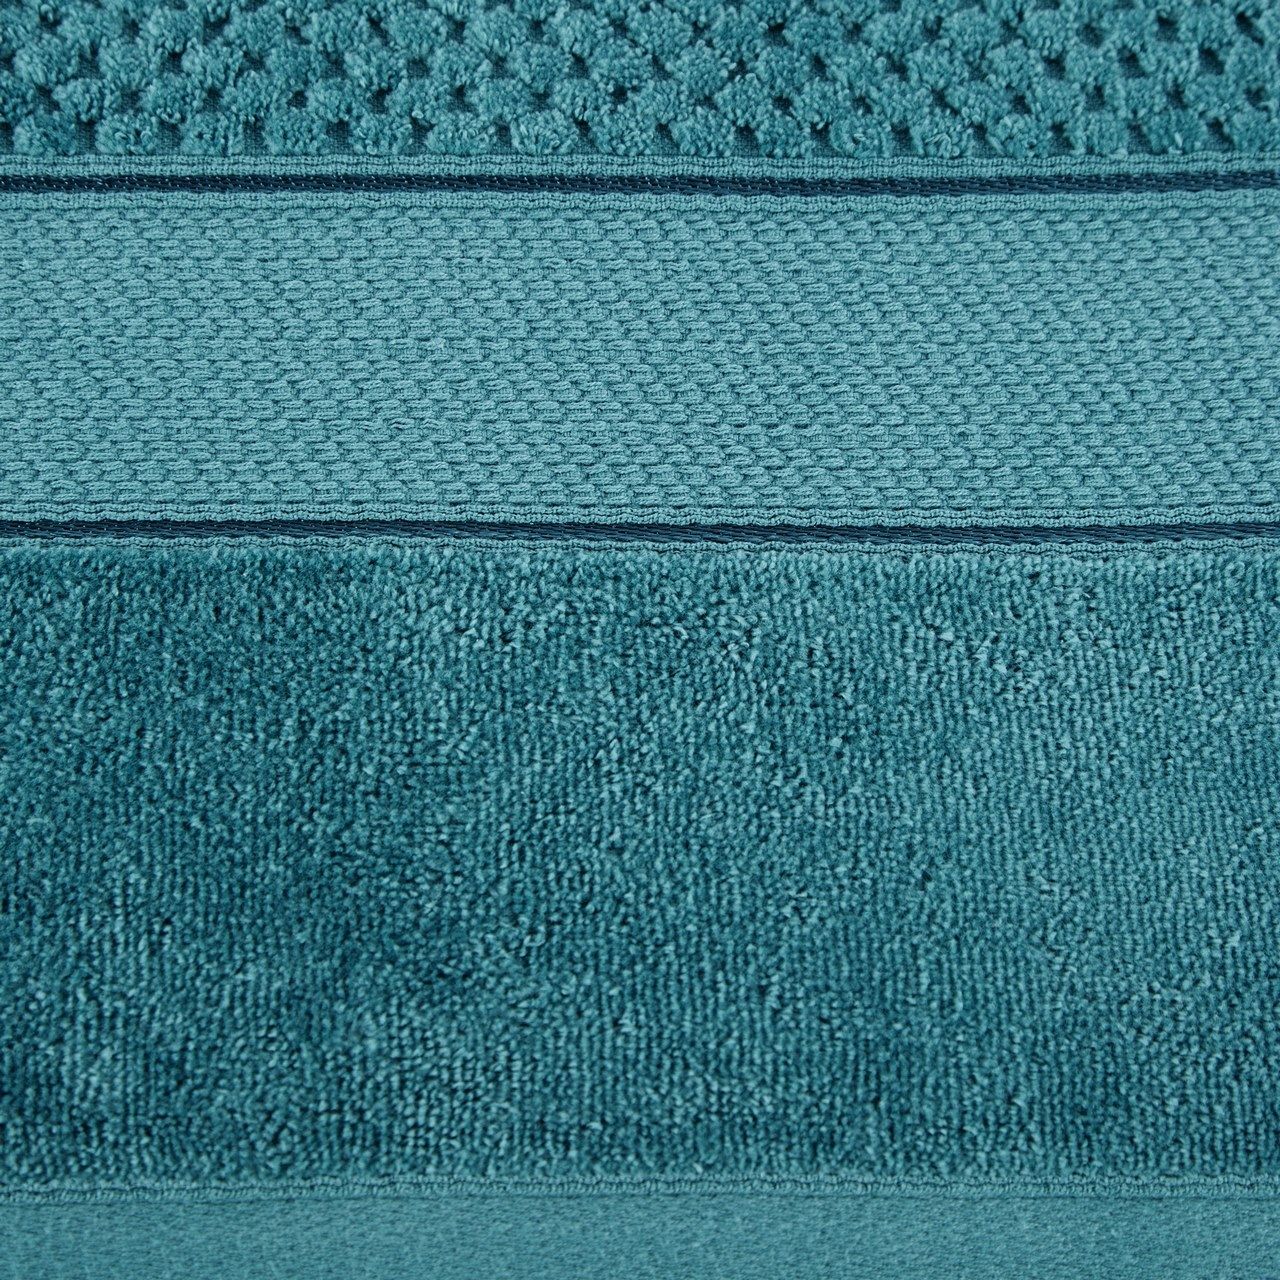 Ręcznik Jessi 70x140 turkusowy frotte 500g/m2